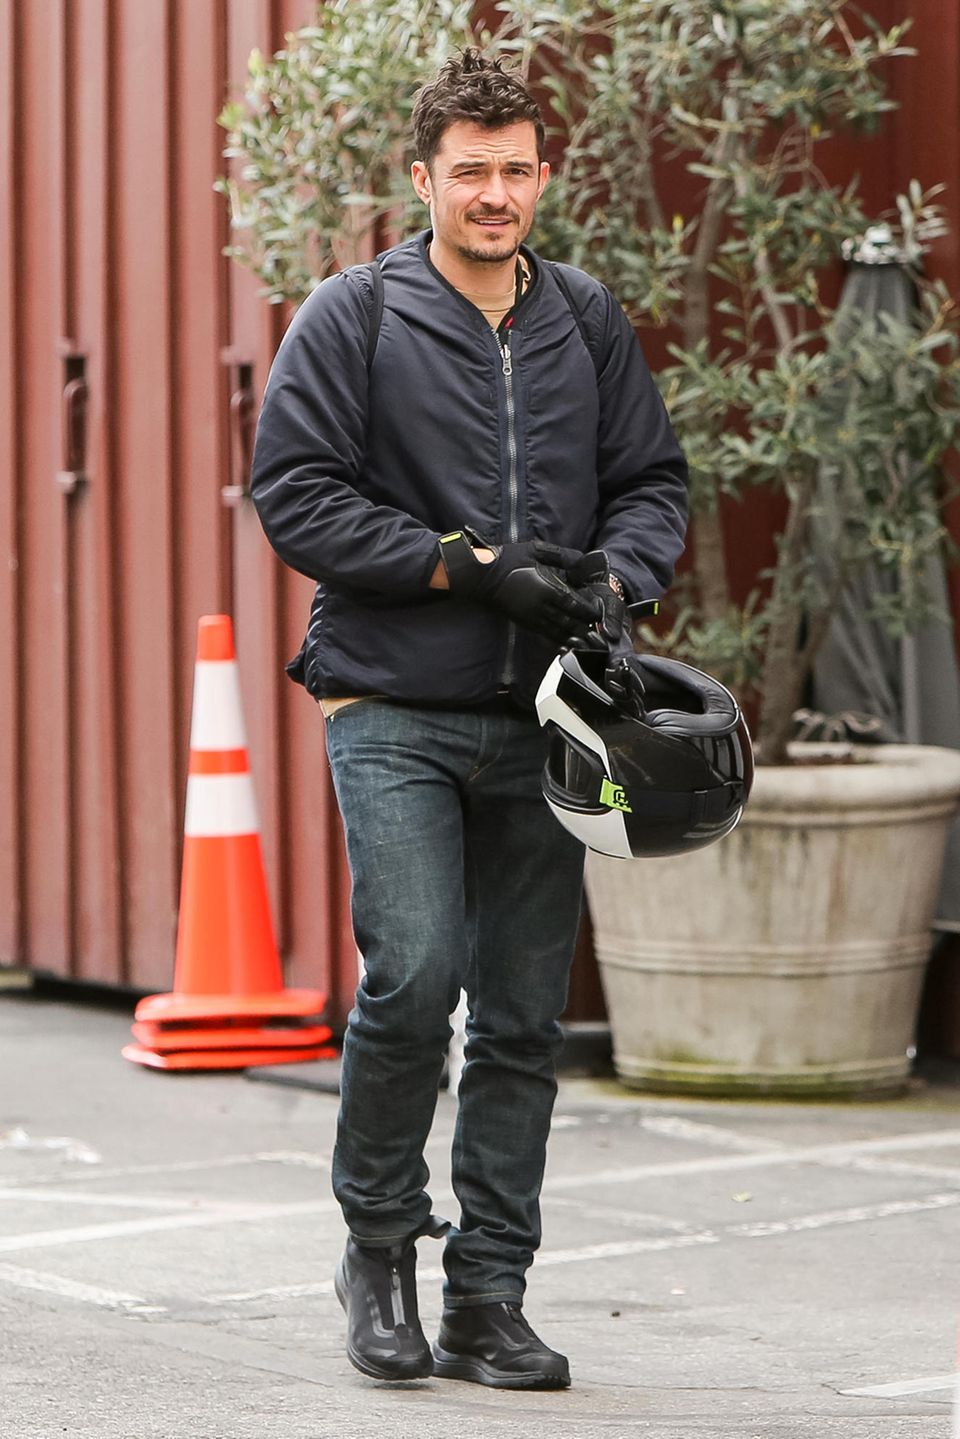 5. März 2019  Nachdem sich der Fahrer den Helm abgenommen hat, wird deutlich, dass es sich um Schauspieler Orlando Bloom handelt, der mit seinem Bike eine Spritztour unternommen hat. 